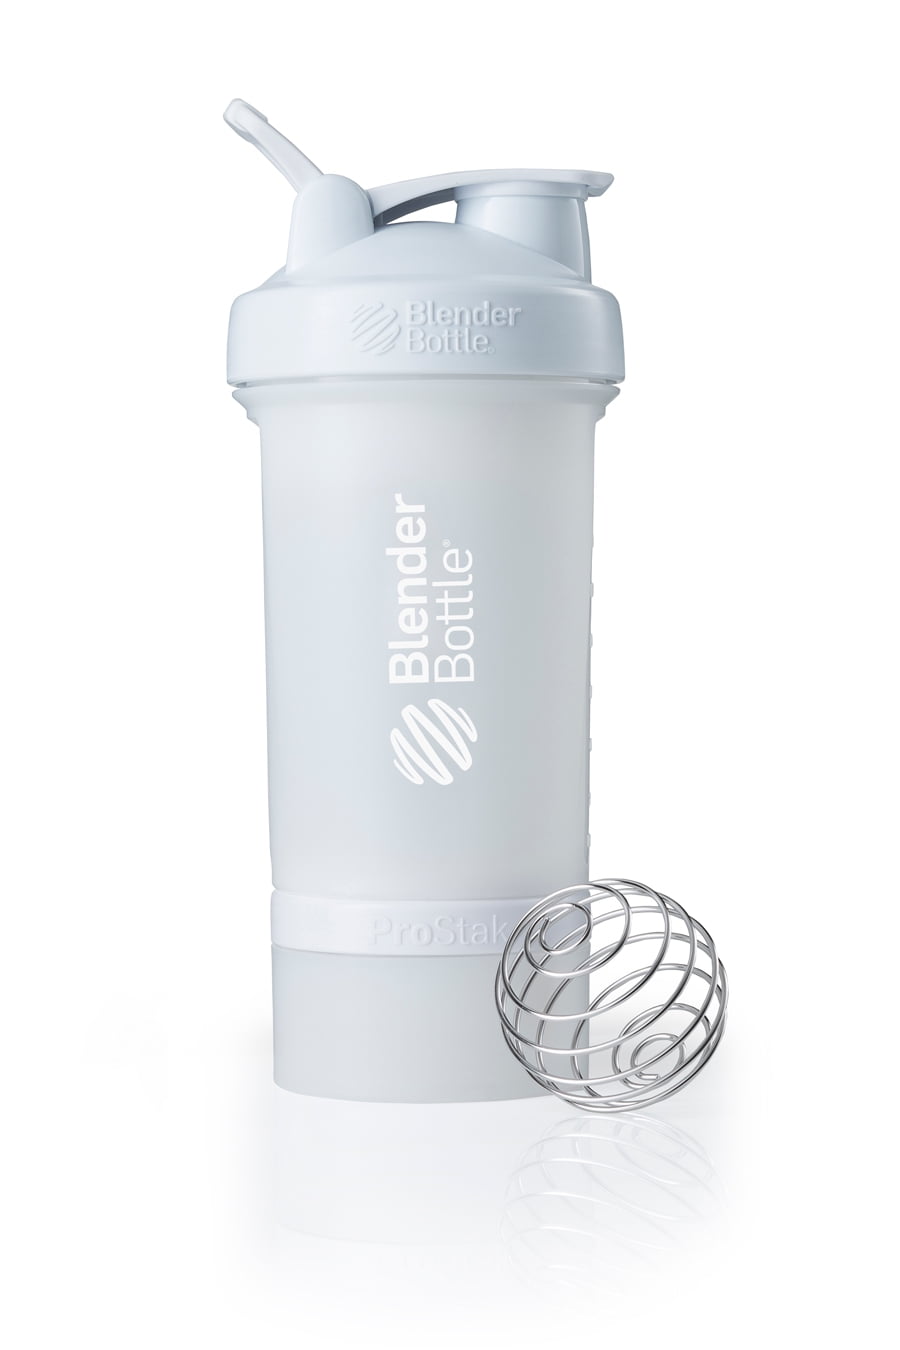 Blender Bottle Prostak Review: Is This Shaker Bottle Any Good